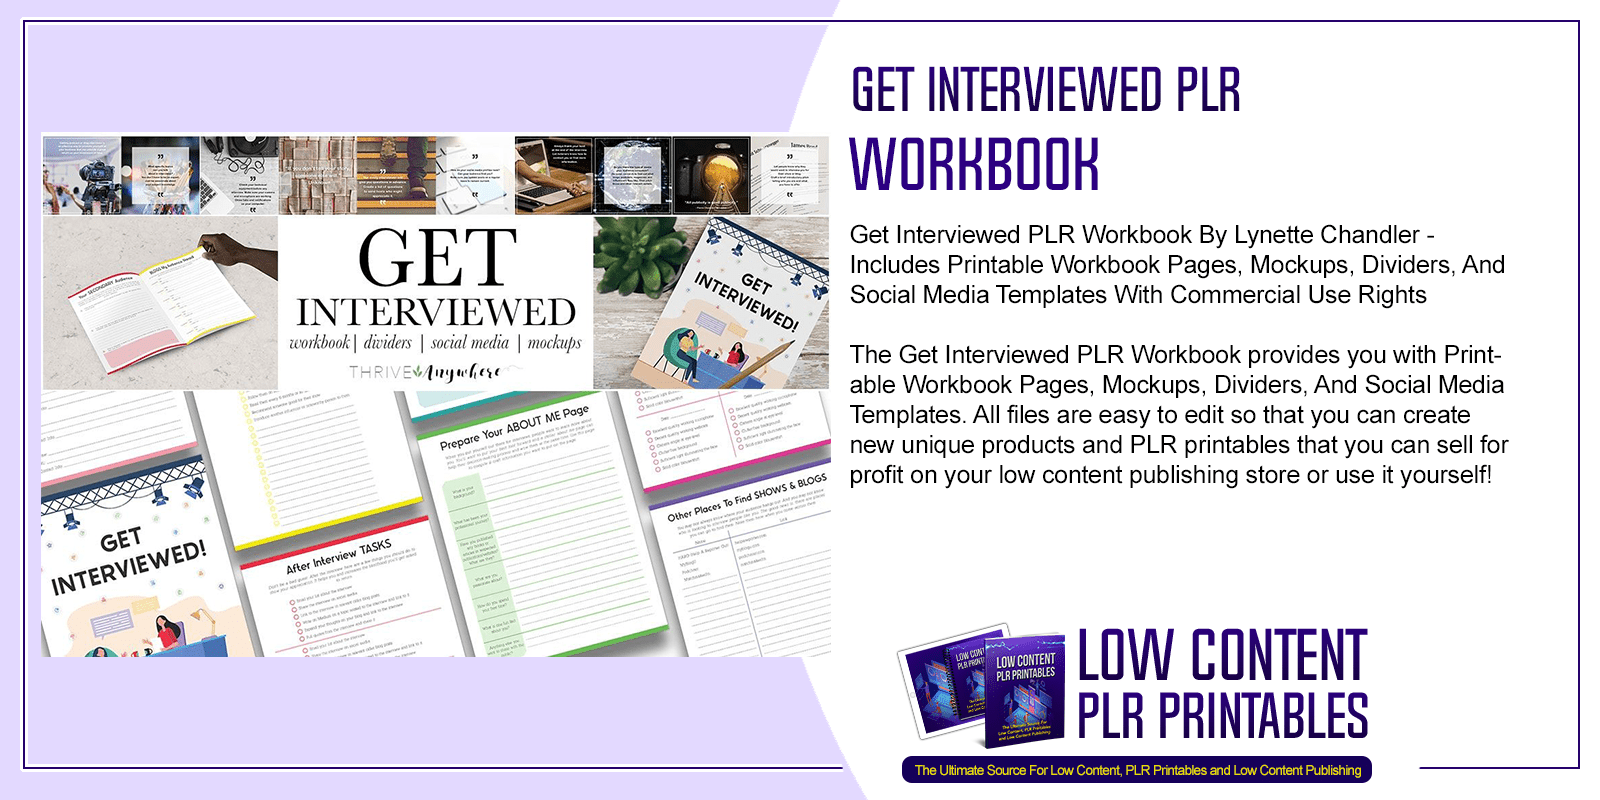 Get Interviewed PLR Workbook